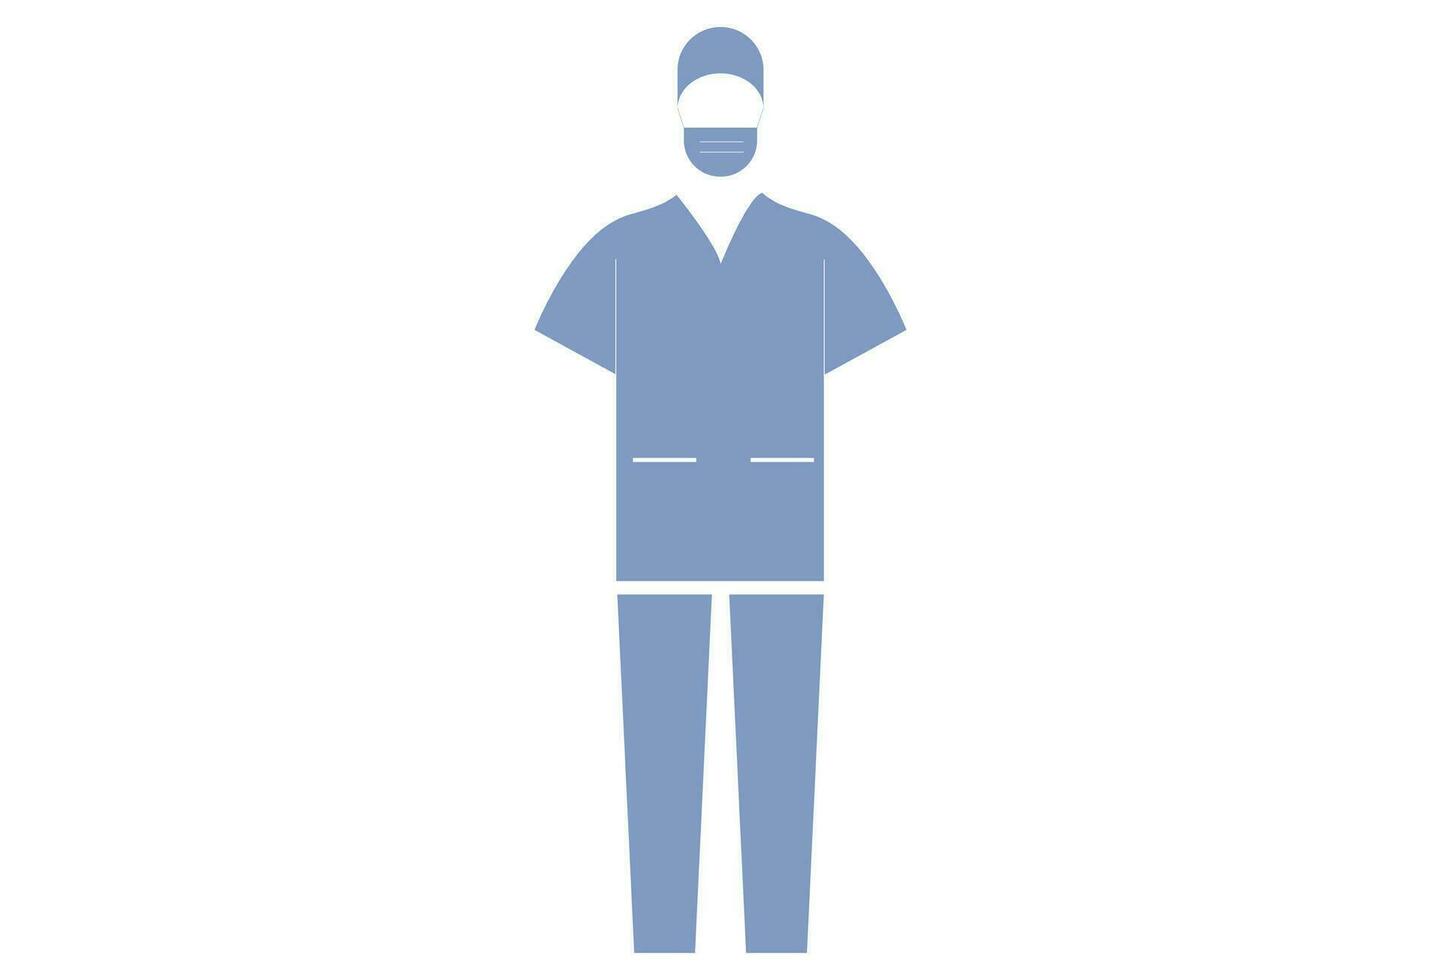 sjuksköterska enhetlig, vanligtvis består av en skrubba topp och byxor i fast färger sådan som blå, grön, eller rosa. sjuksköterskor Maj ha på sig bekväm och stödjande skor för lång timmar av stående och gående. vektor